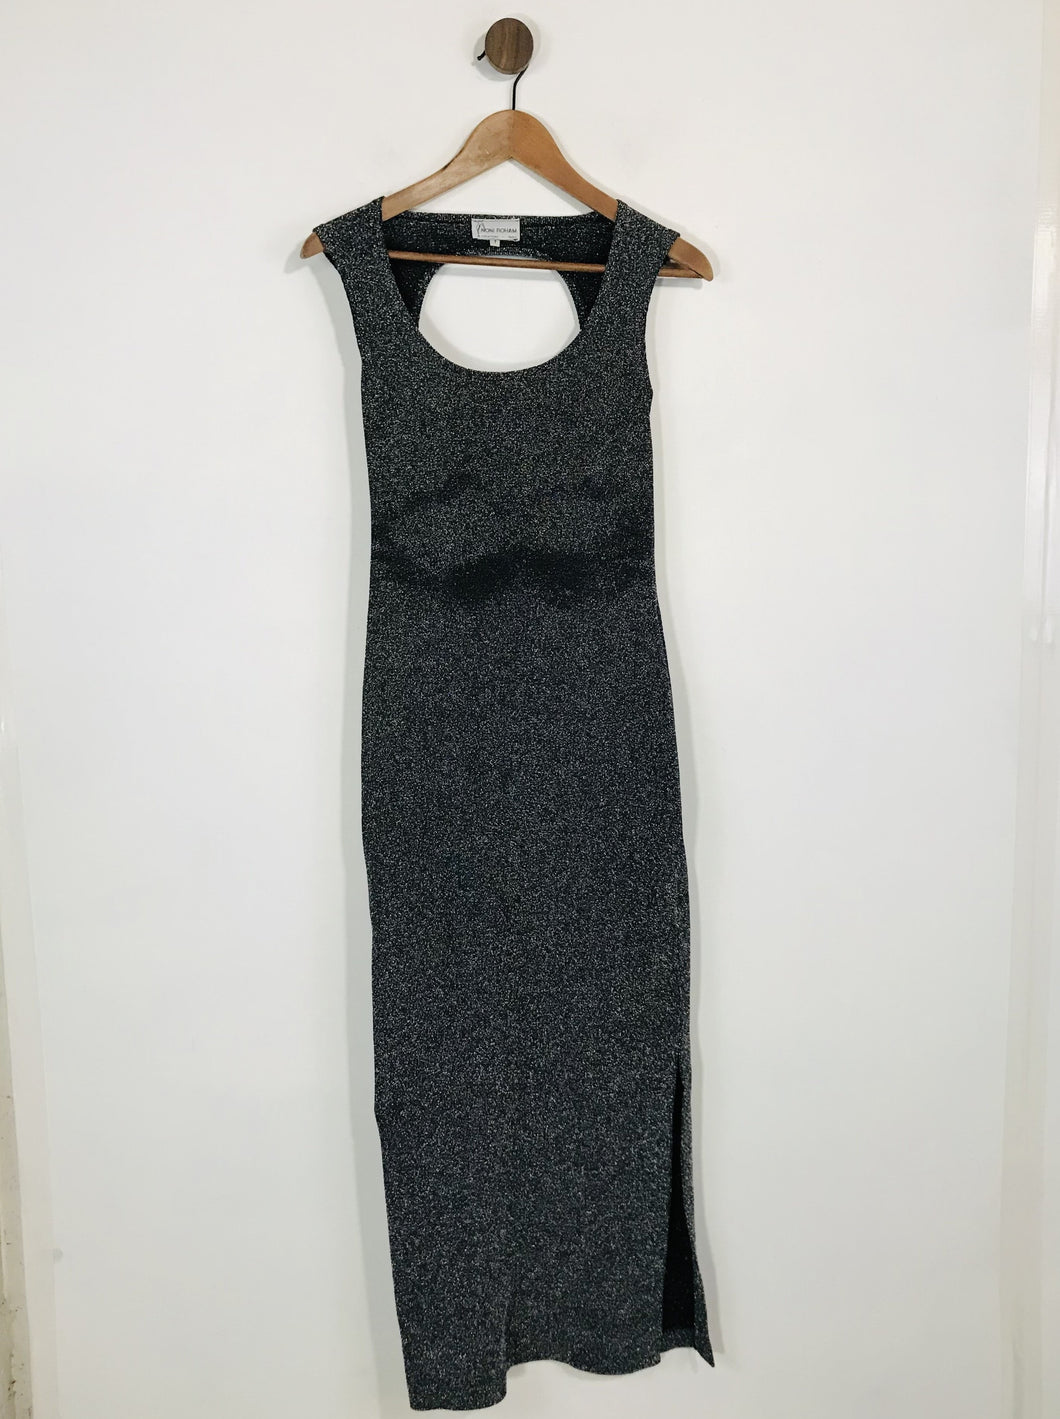 Noni Roham Women's Body Con Glittery Knit Maxi Dress | S UK8 | Black